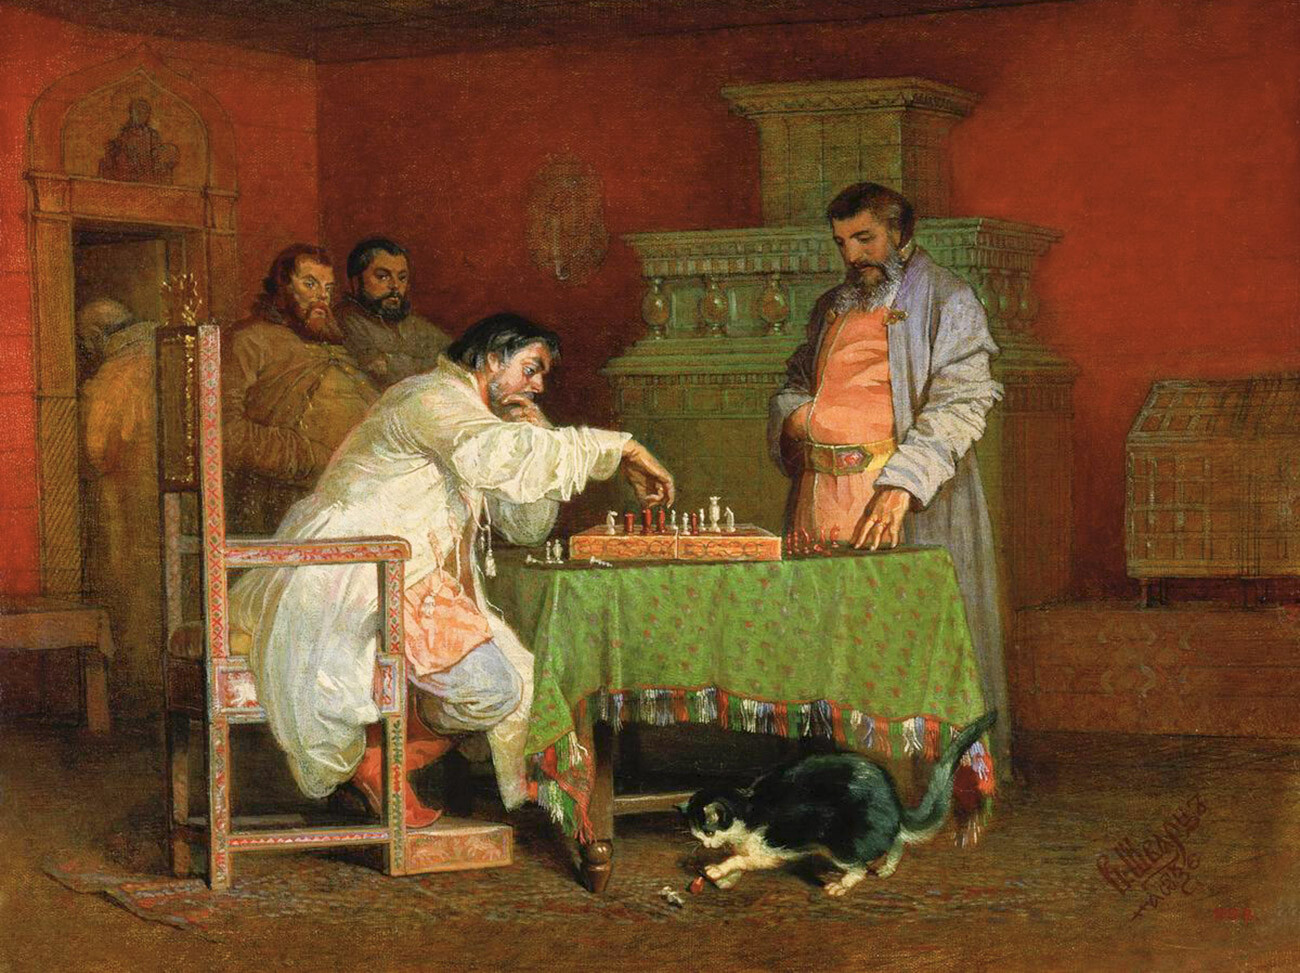 Vjacheslav Schwarz. Scena dalla vita degli zar russi (lo zar Alessio I gioca a scacchi)
